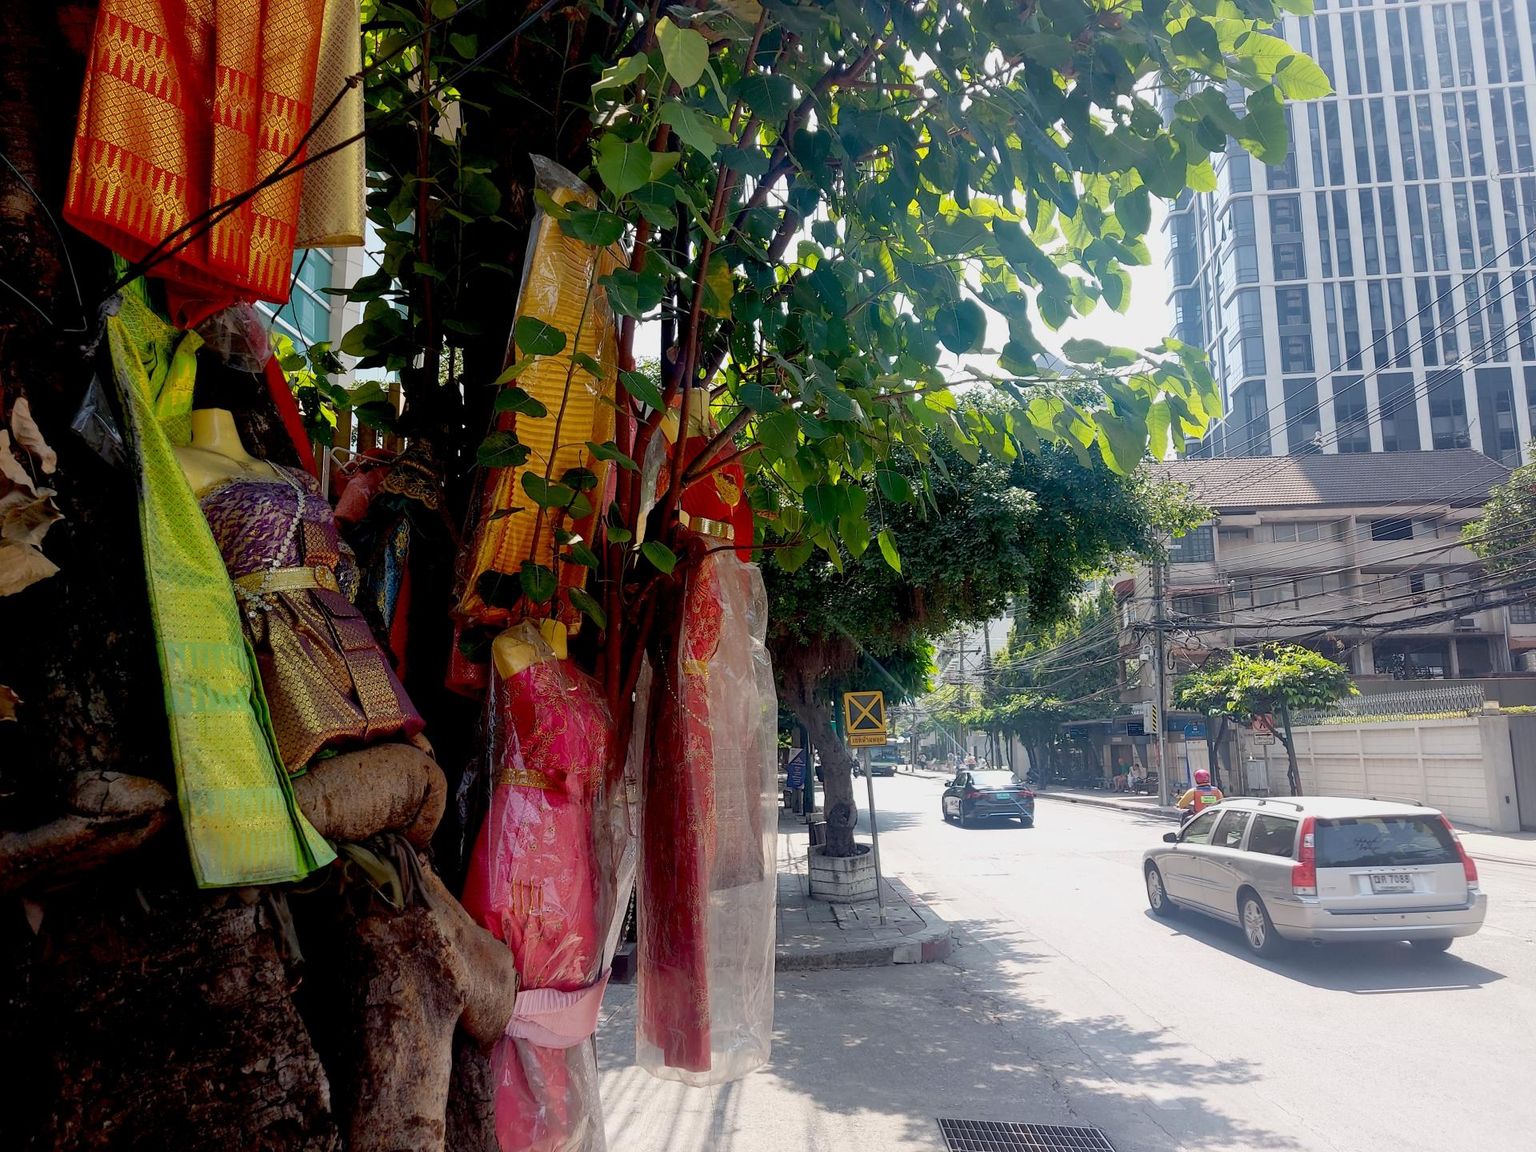 Kleite täis puu Bangkokis: kohalikud elanikud usuvad, et okste vahel elab naisvaim, ning kui puu juures esitatud palved täituvad, toovad inimesed vaimule tänutäheks värvikirevaid rõivaid.